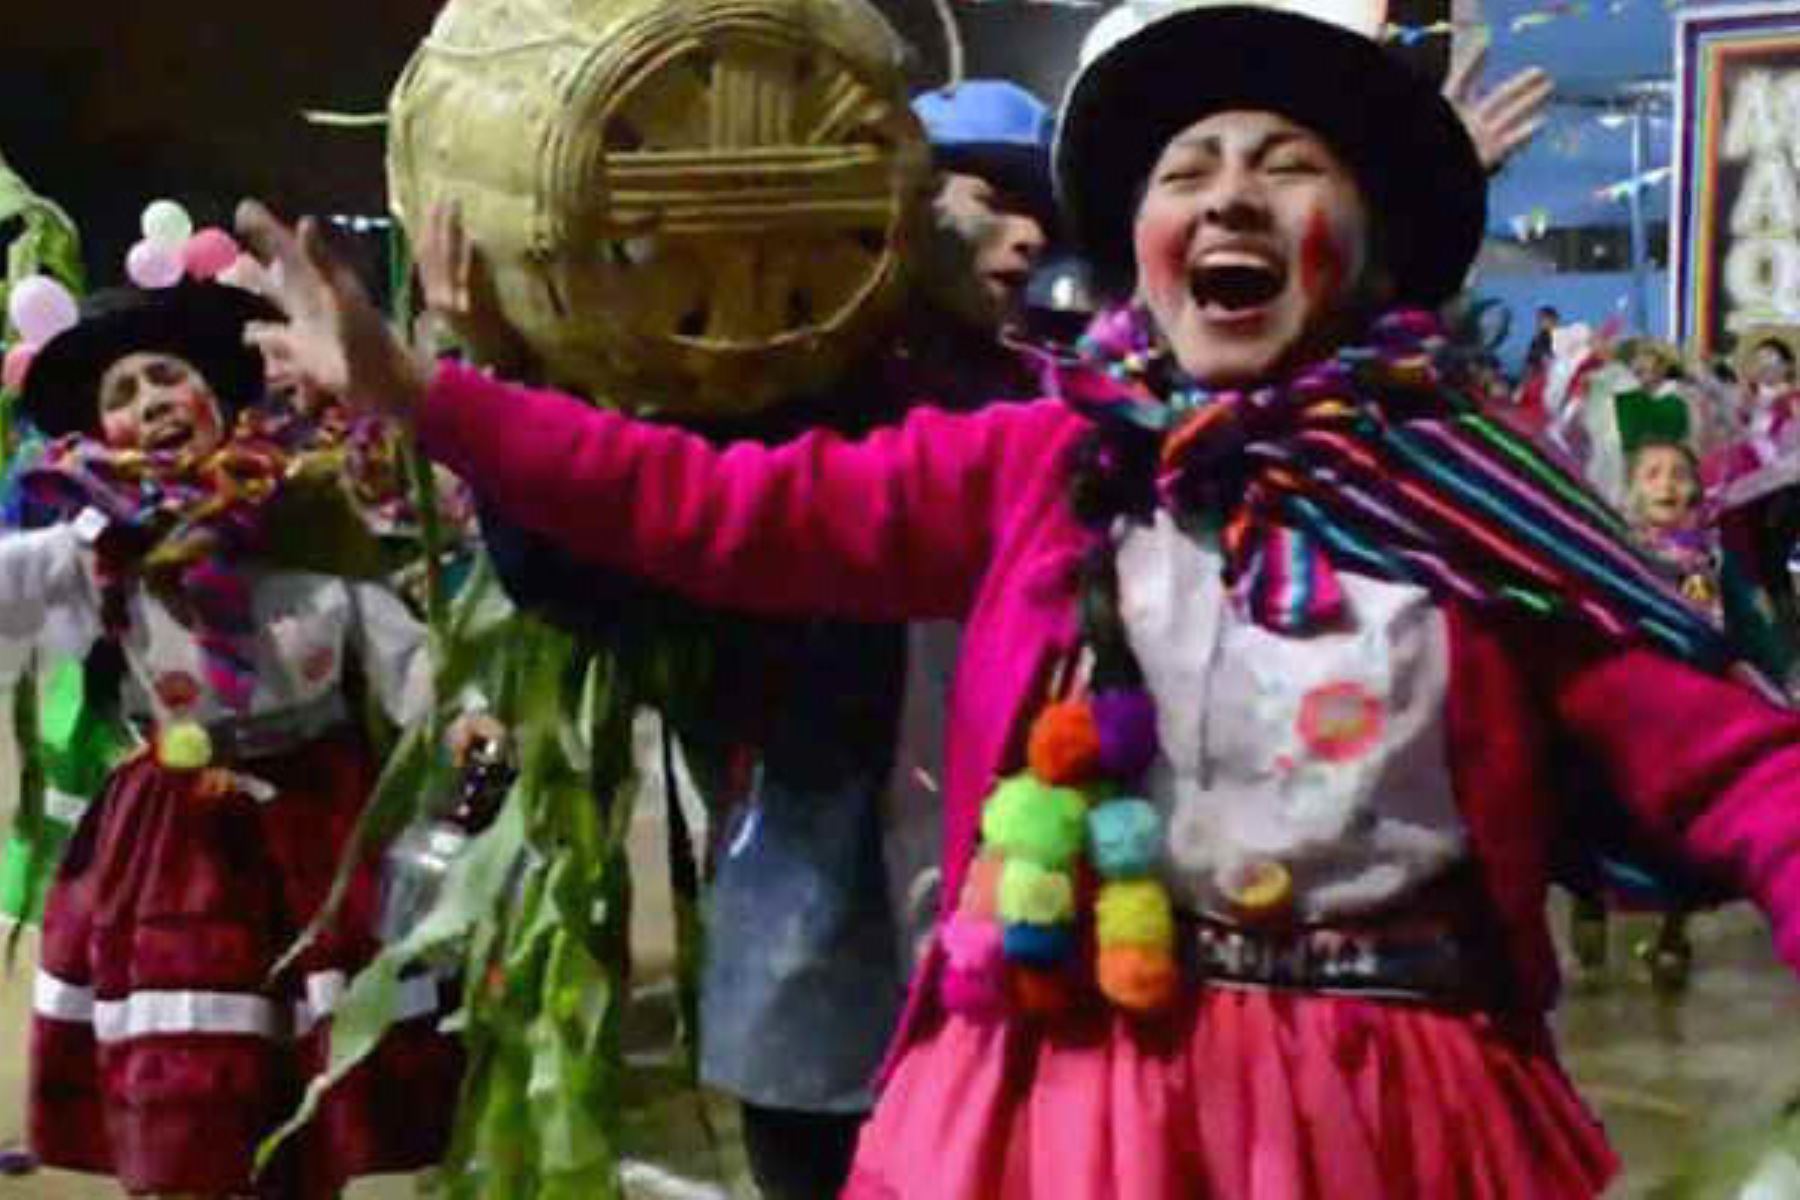 Los carnavales son la máxima expresión de júbilo y colorido en los que se manifiesta la vasta riqueza cultural del Perú, así como la entrañable identidad regional y orgullo de los pueblos expresada en danzas, música y tradiciones que trascienden al tiempo. ANDINA/Difusión